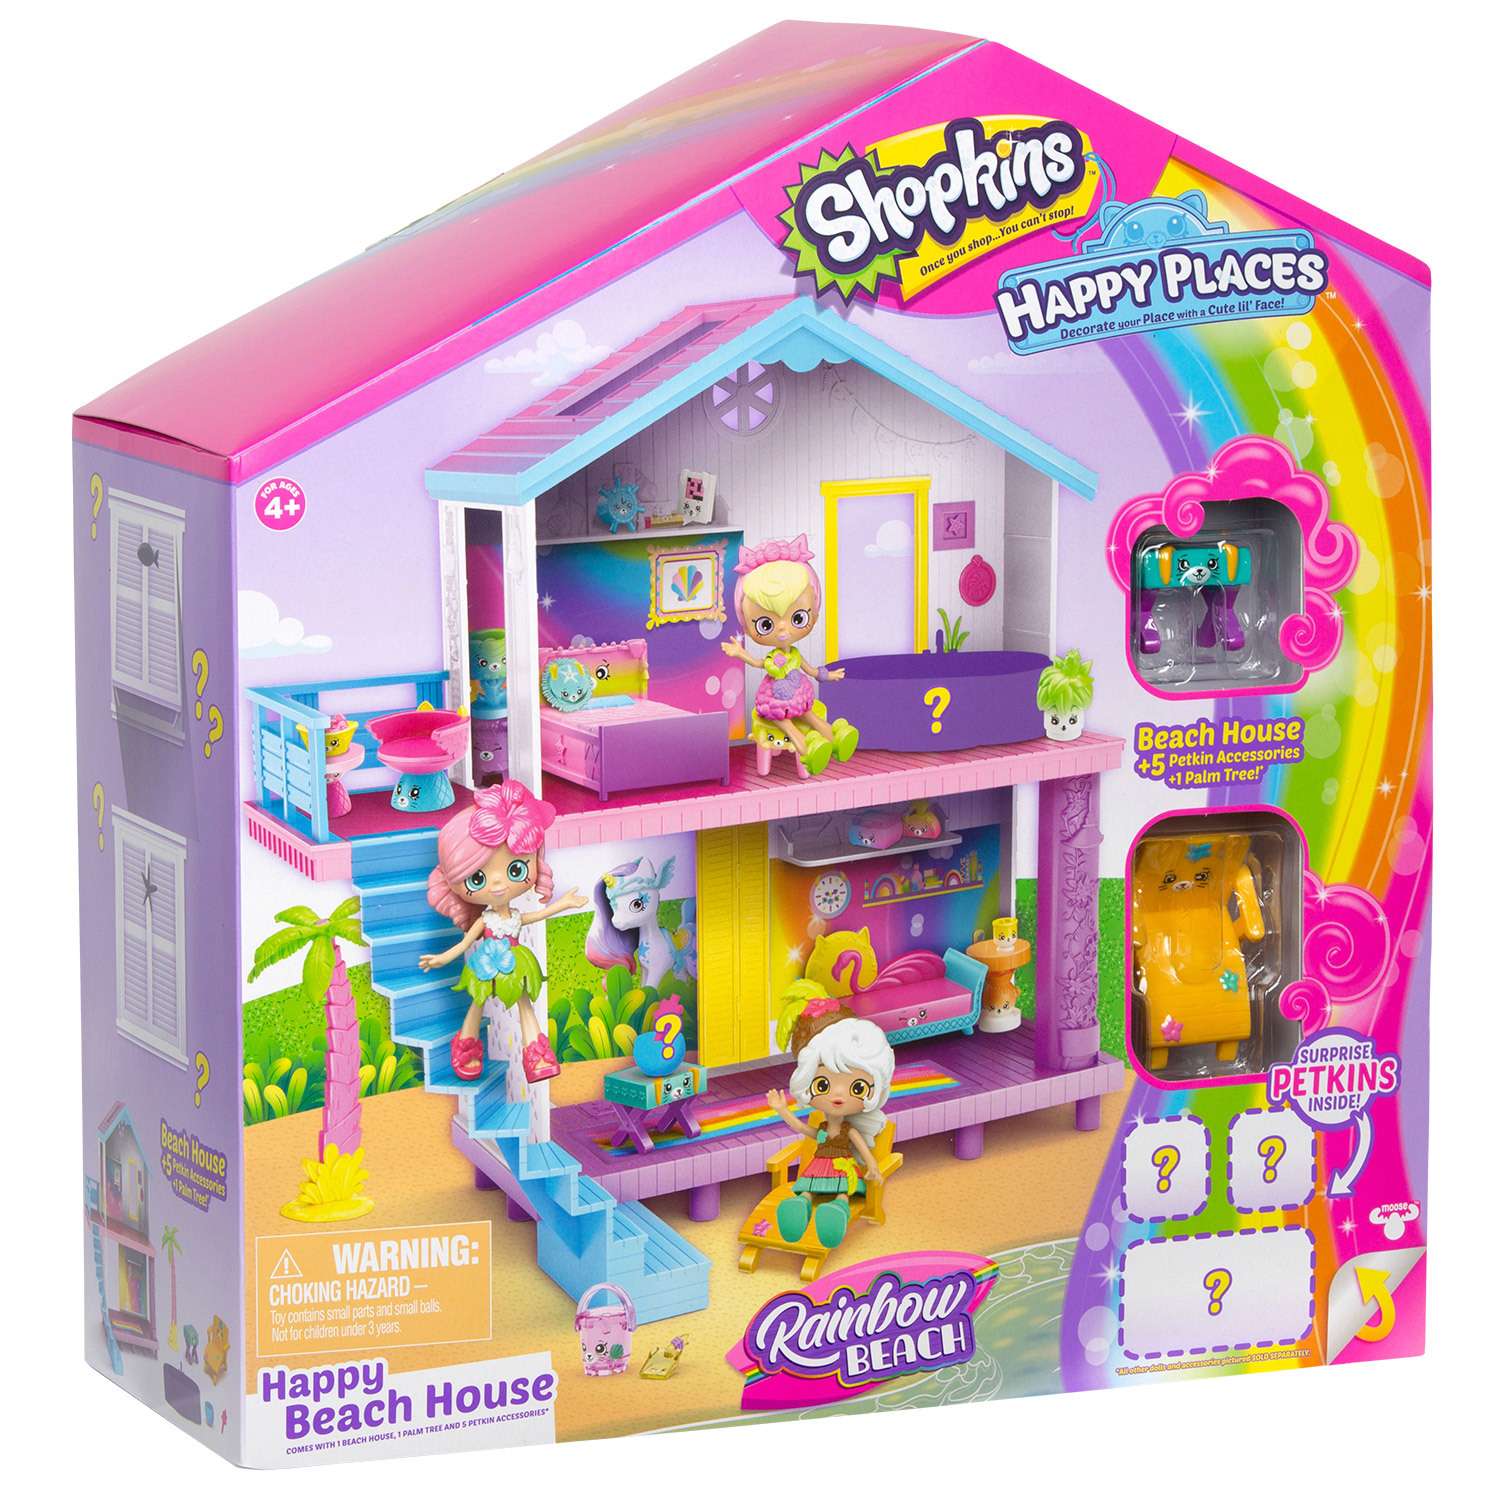 Игрушка Happy Places Shopkins Пляжный домик в непрозрачной упаковке (Сюрприз) 56860 - фото 3